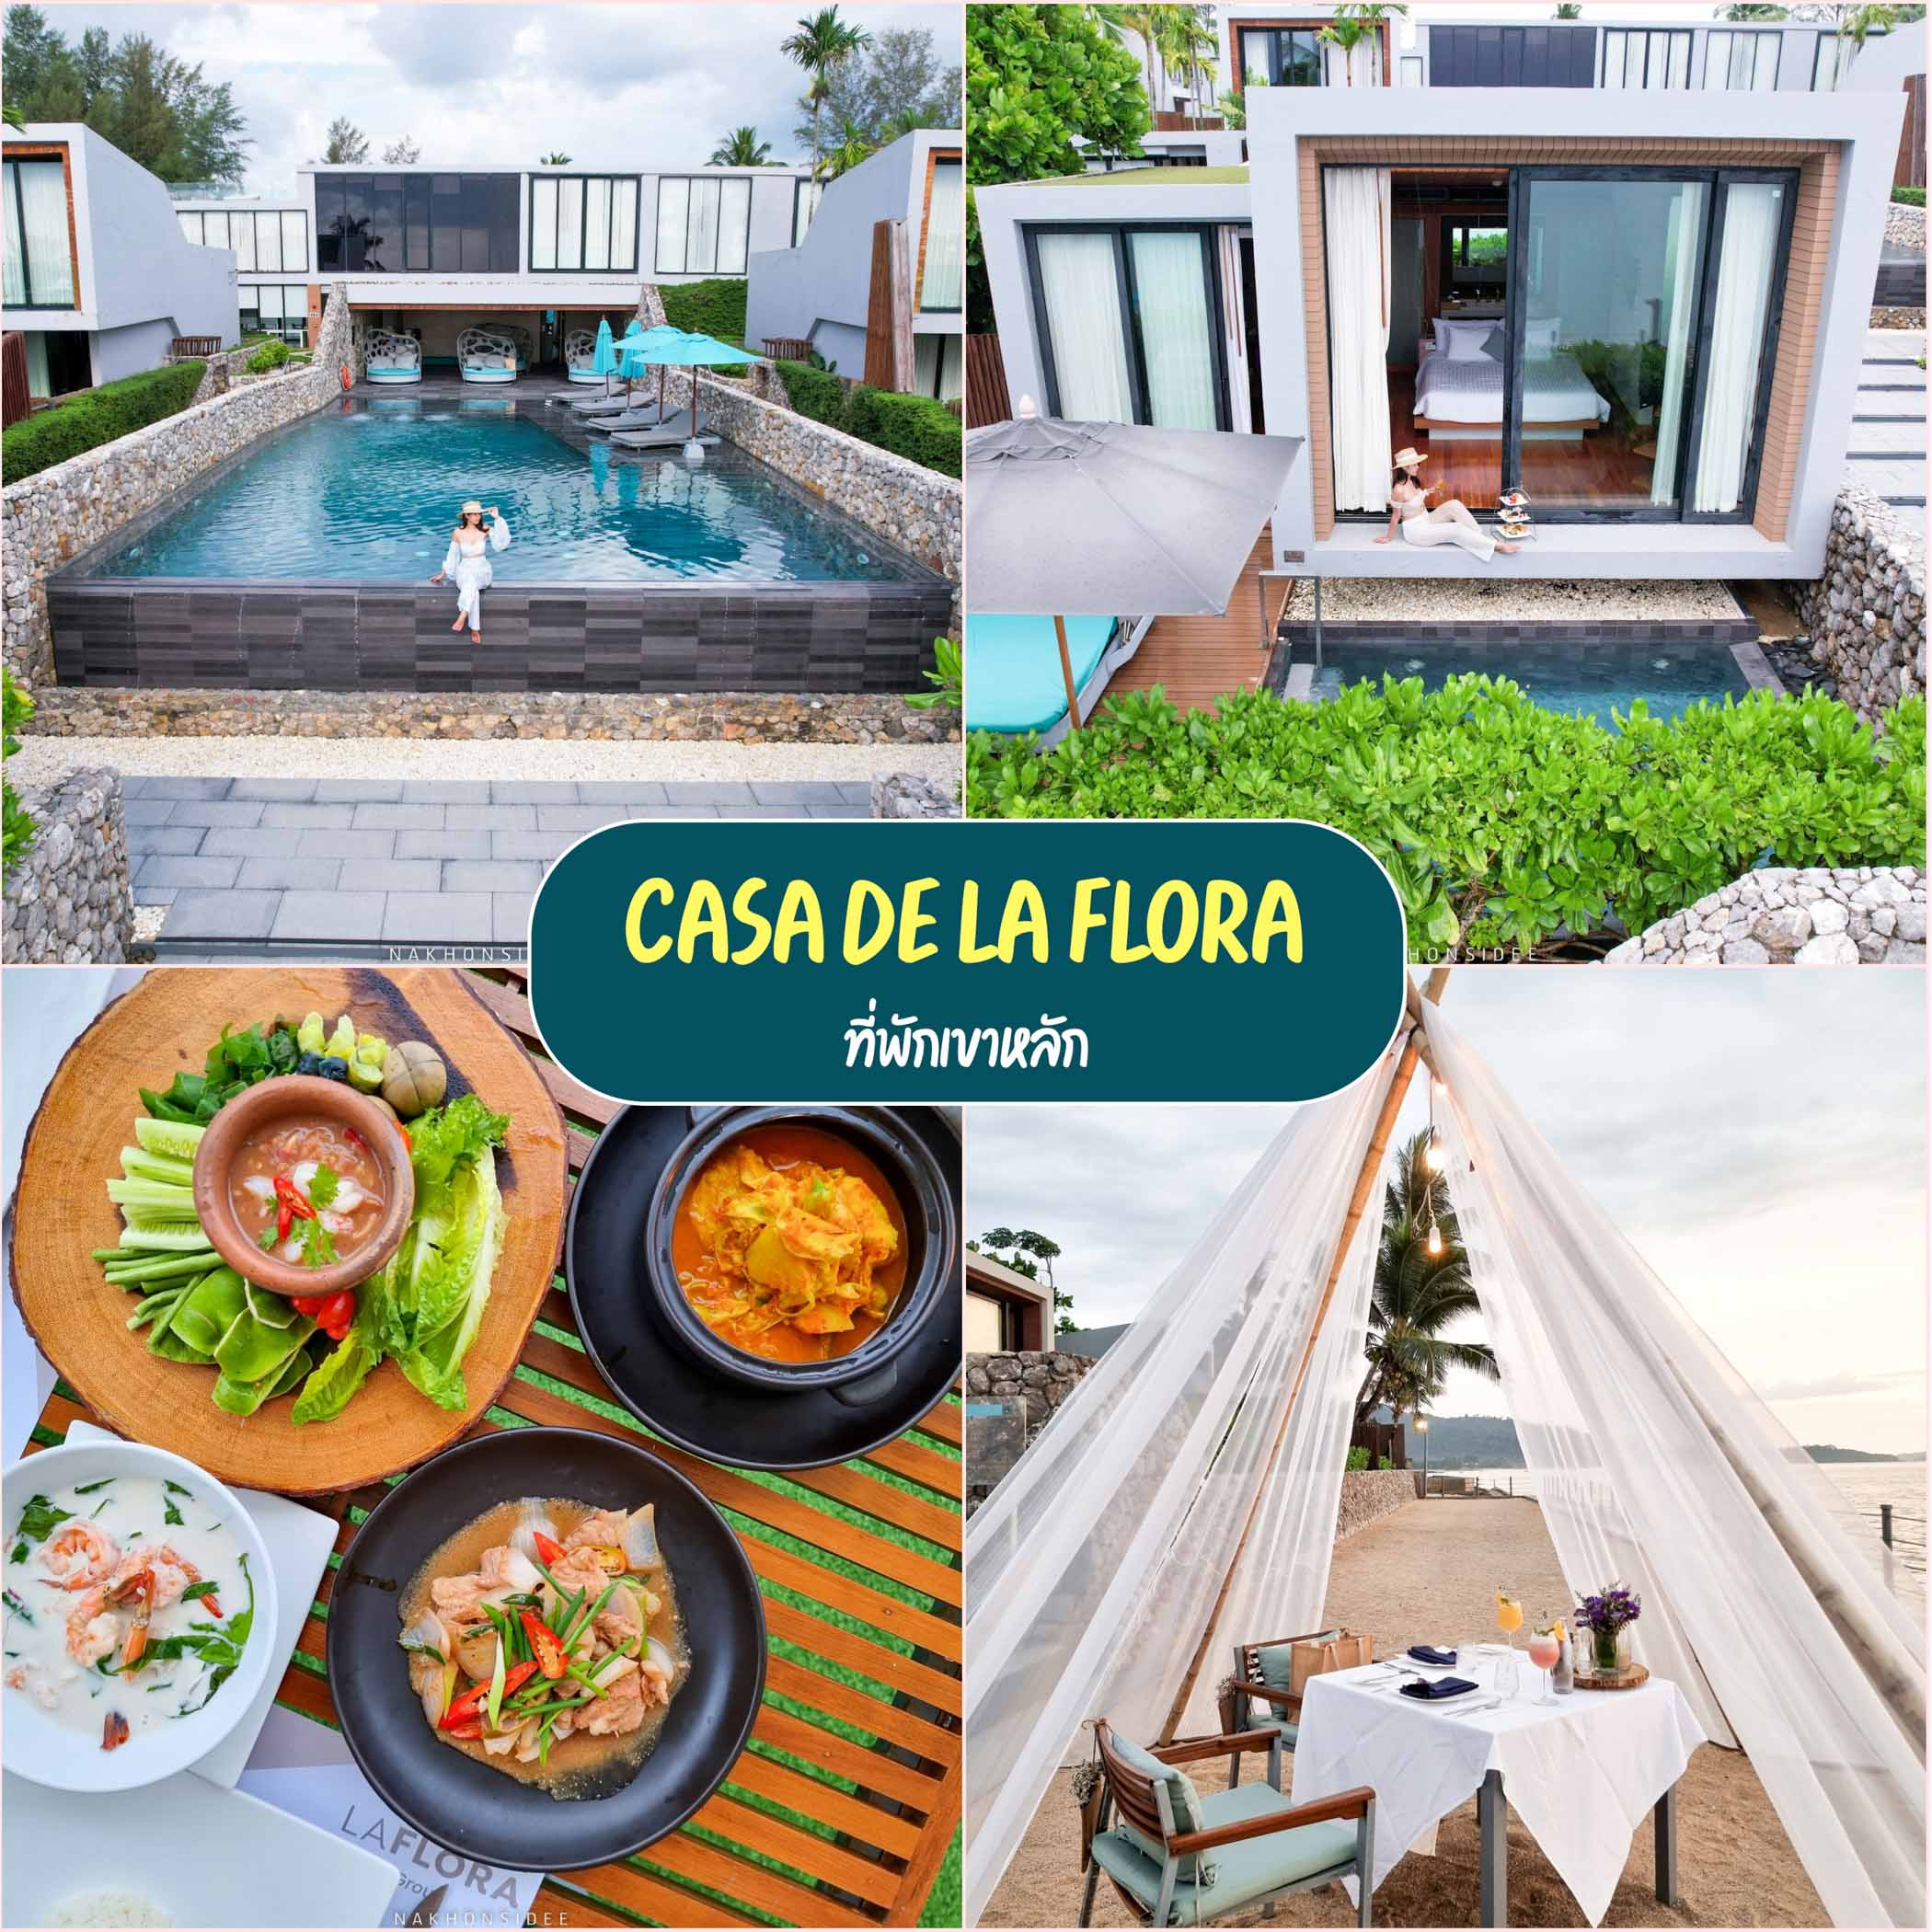 Casa de La Flora ที่พักเขาหลัก ริมทะเลเขาหลัก บอกเลยว่าสวยมวากกก 10/10 วิวหลักล้าน อาหารอร่อย มีพูลวิลล่า มีห้องแบบ 2 ชั้น